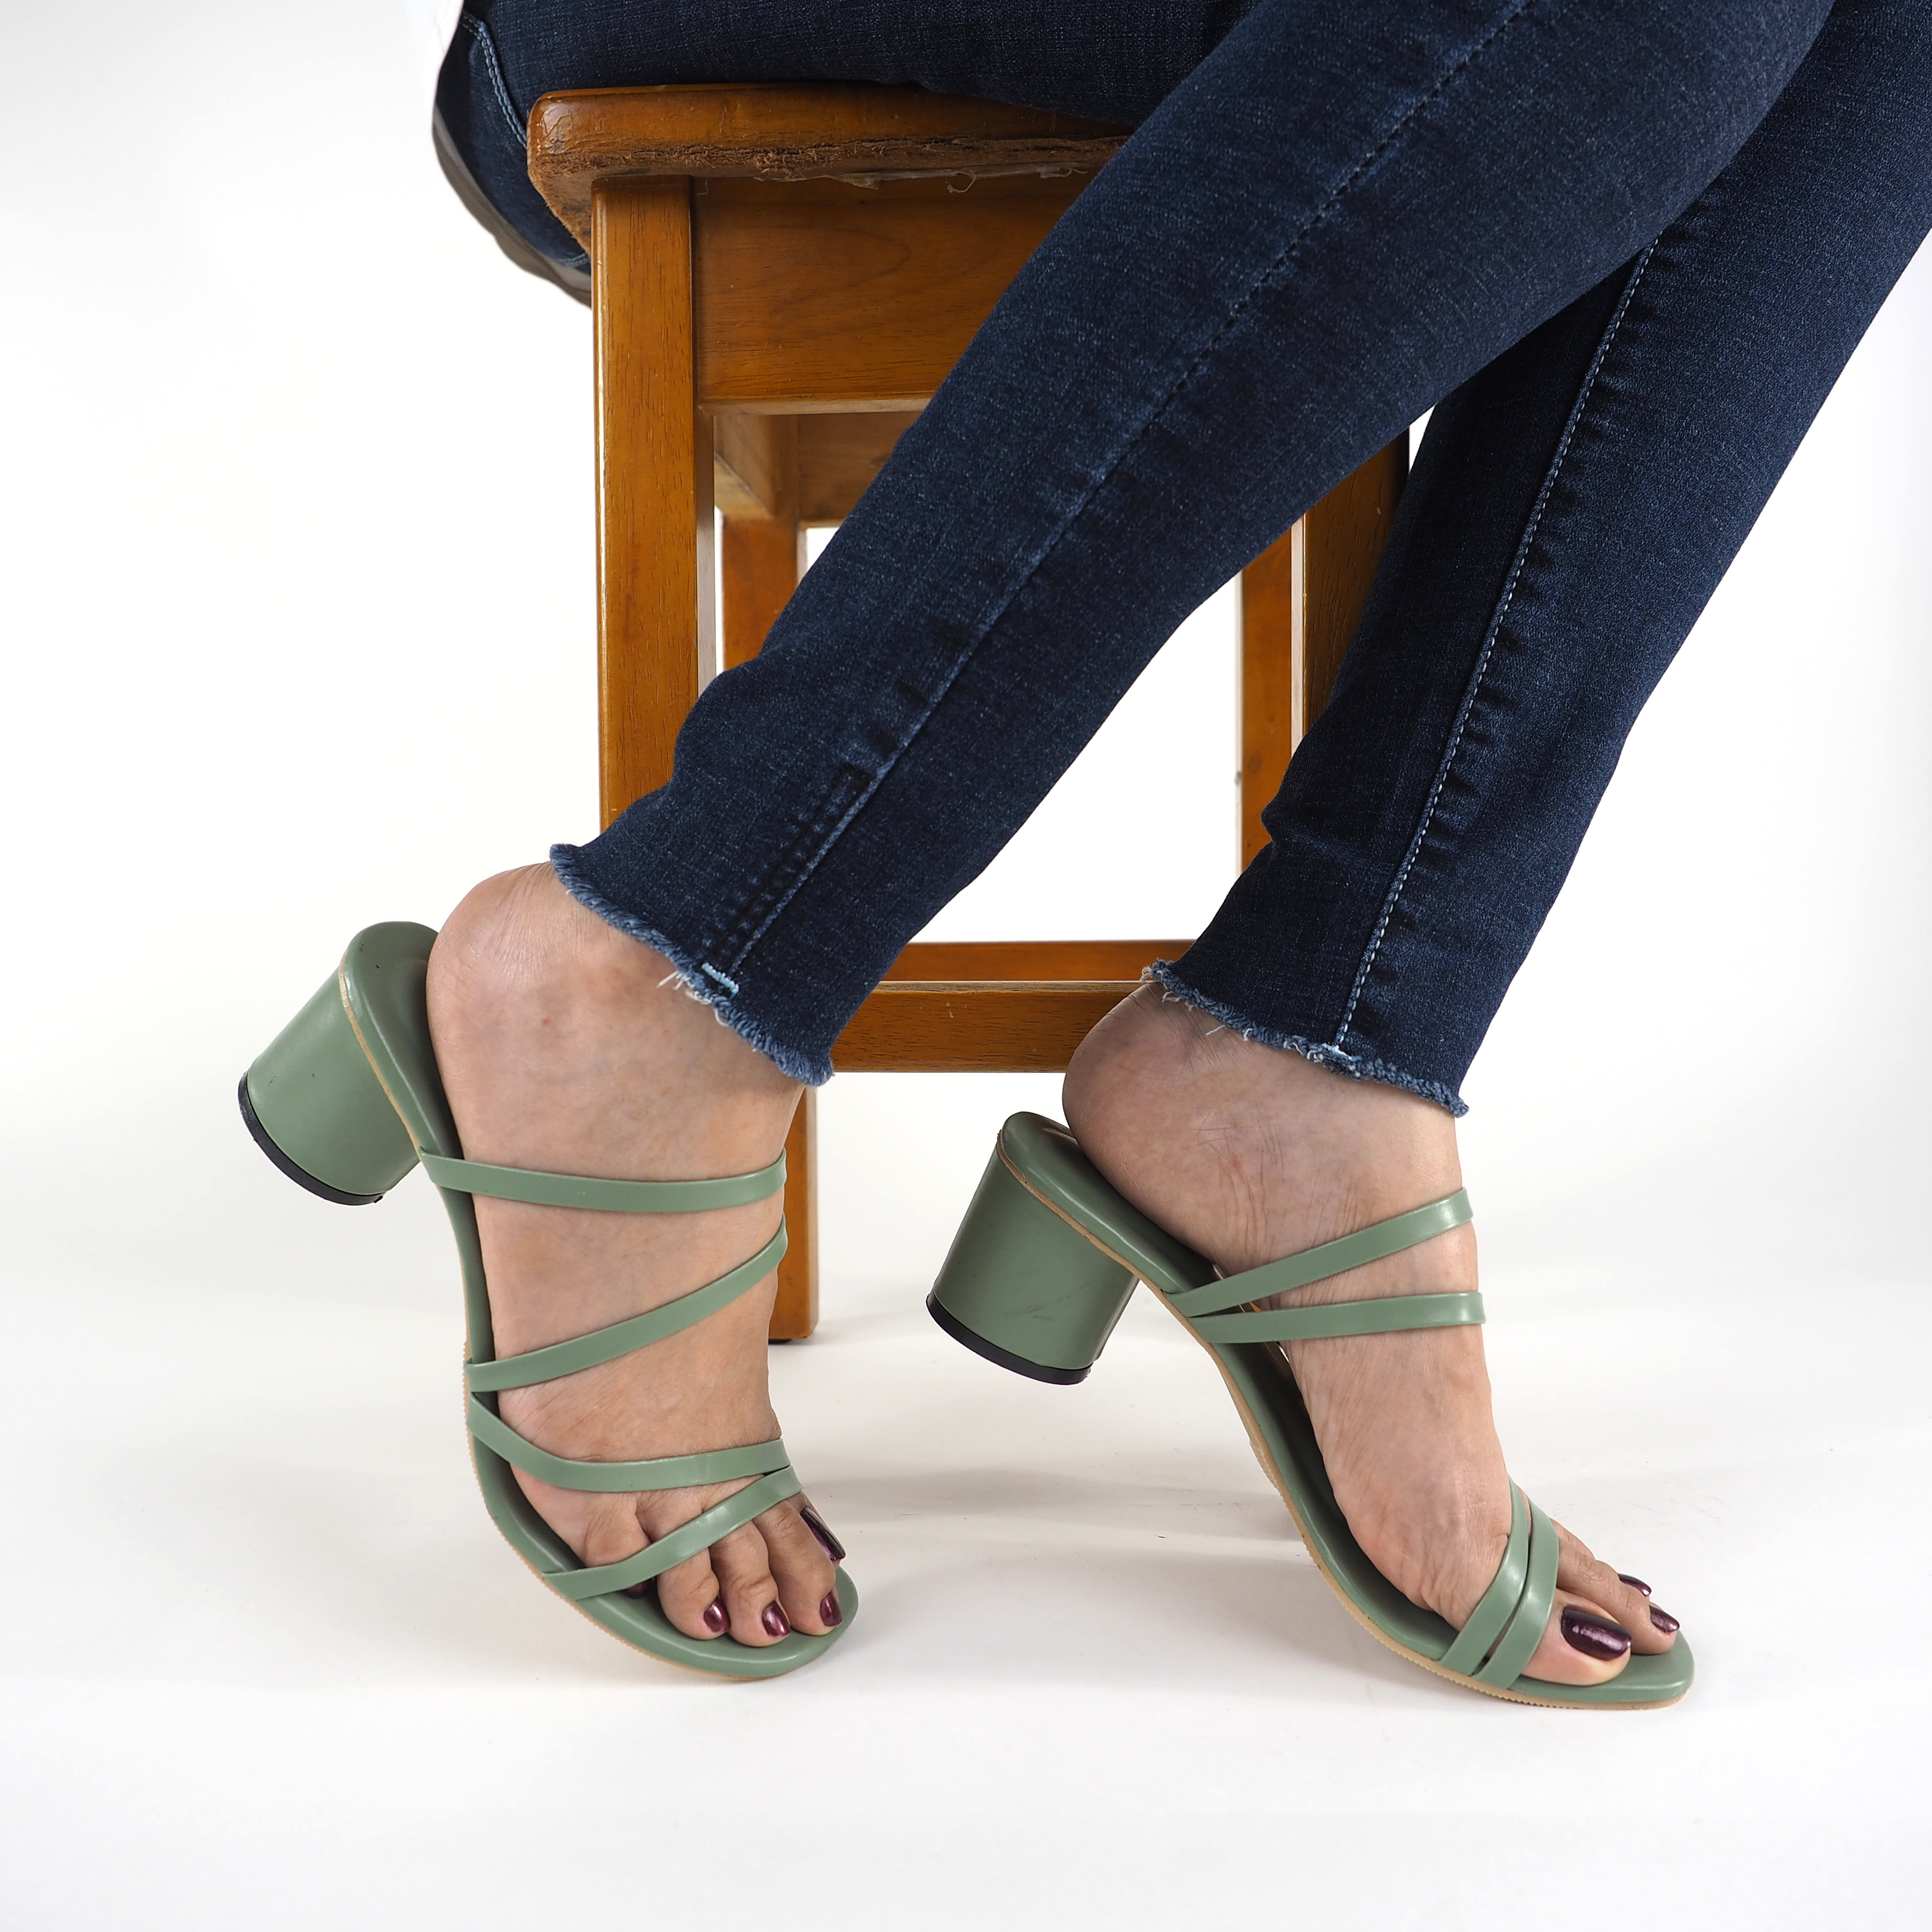 รองเท้าแตะส้นสูง รองเท้าผู้หญิง รองเท้าส้นสูง 2 นิ้ว รองเท้าแฟชั่น รองเท้าเปิดส้น รองเท้าไซส์ 42 ราคาโรงงาน ราคาถูก แบรนด์ grace รุ่น 4 สาย